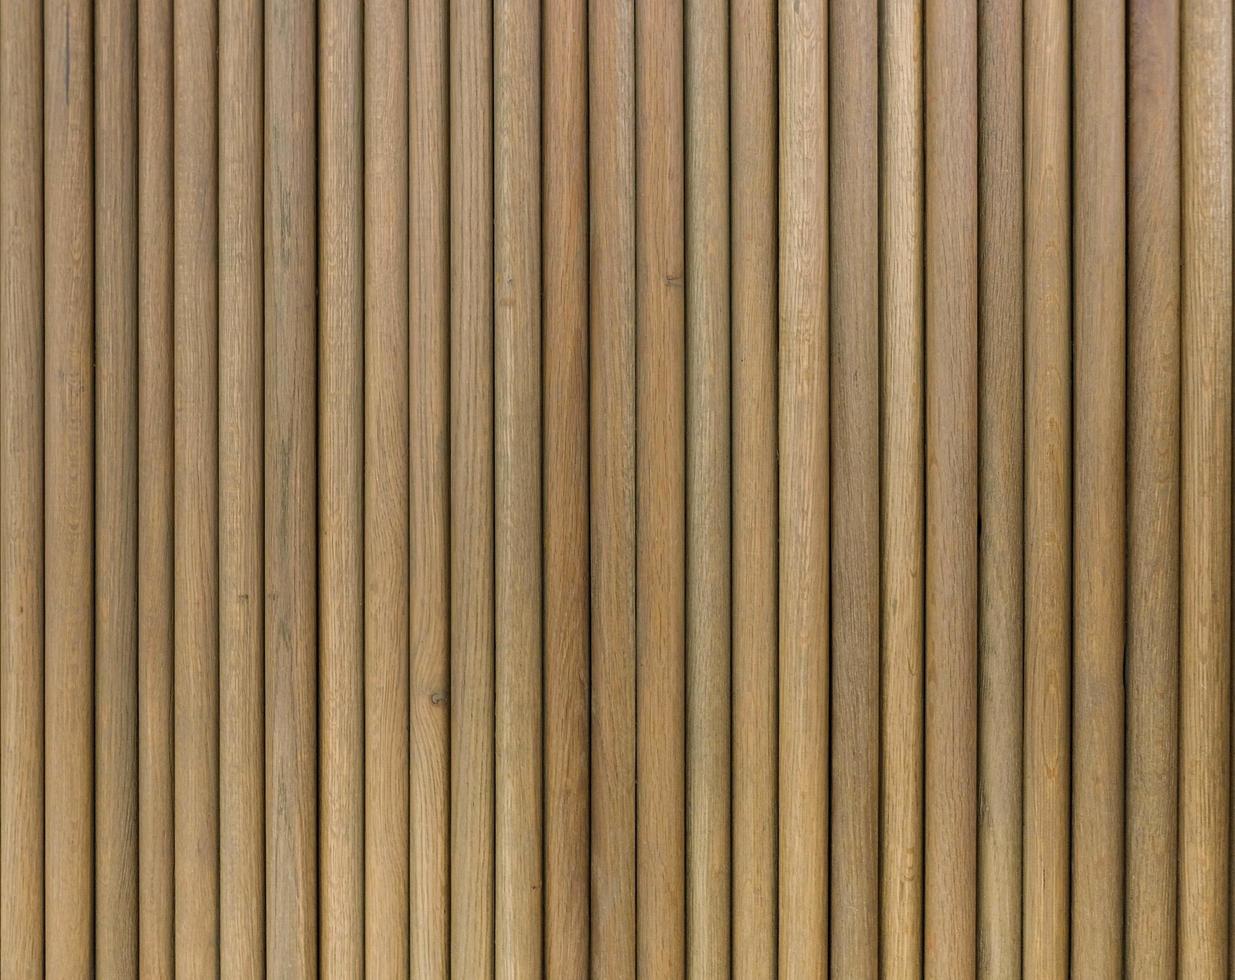 bambu de tom marrom natural foto